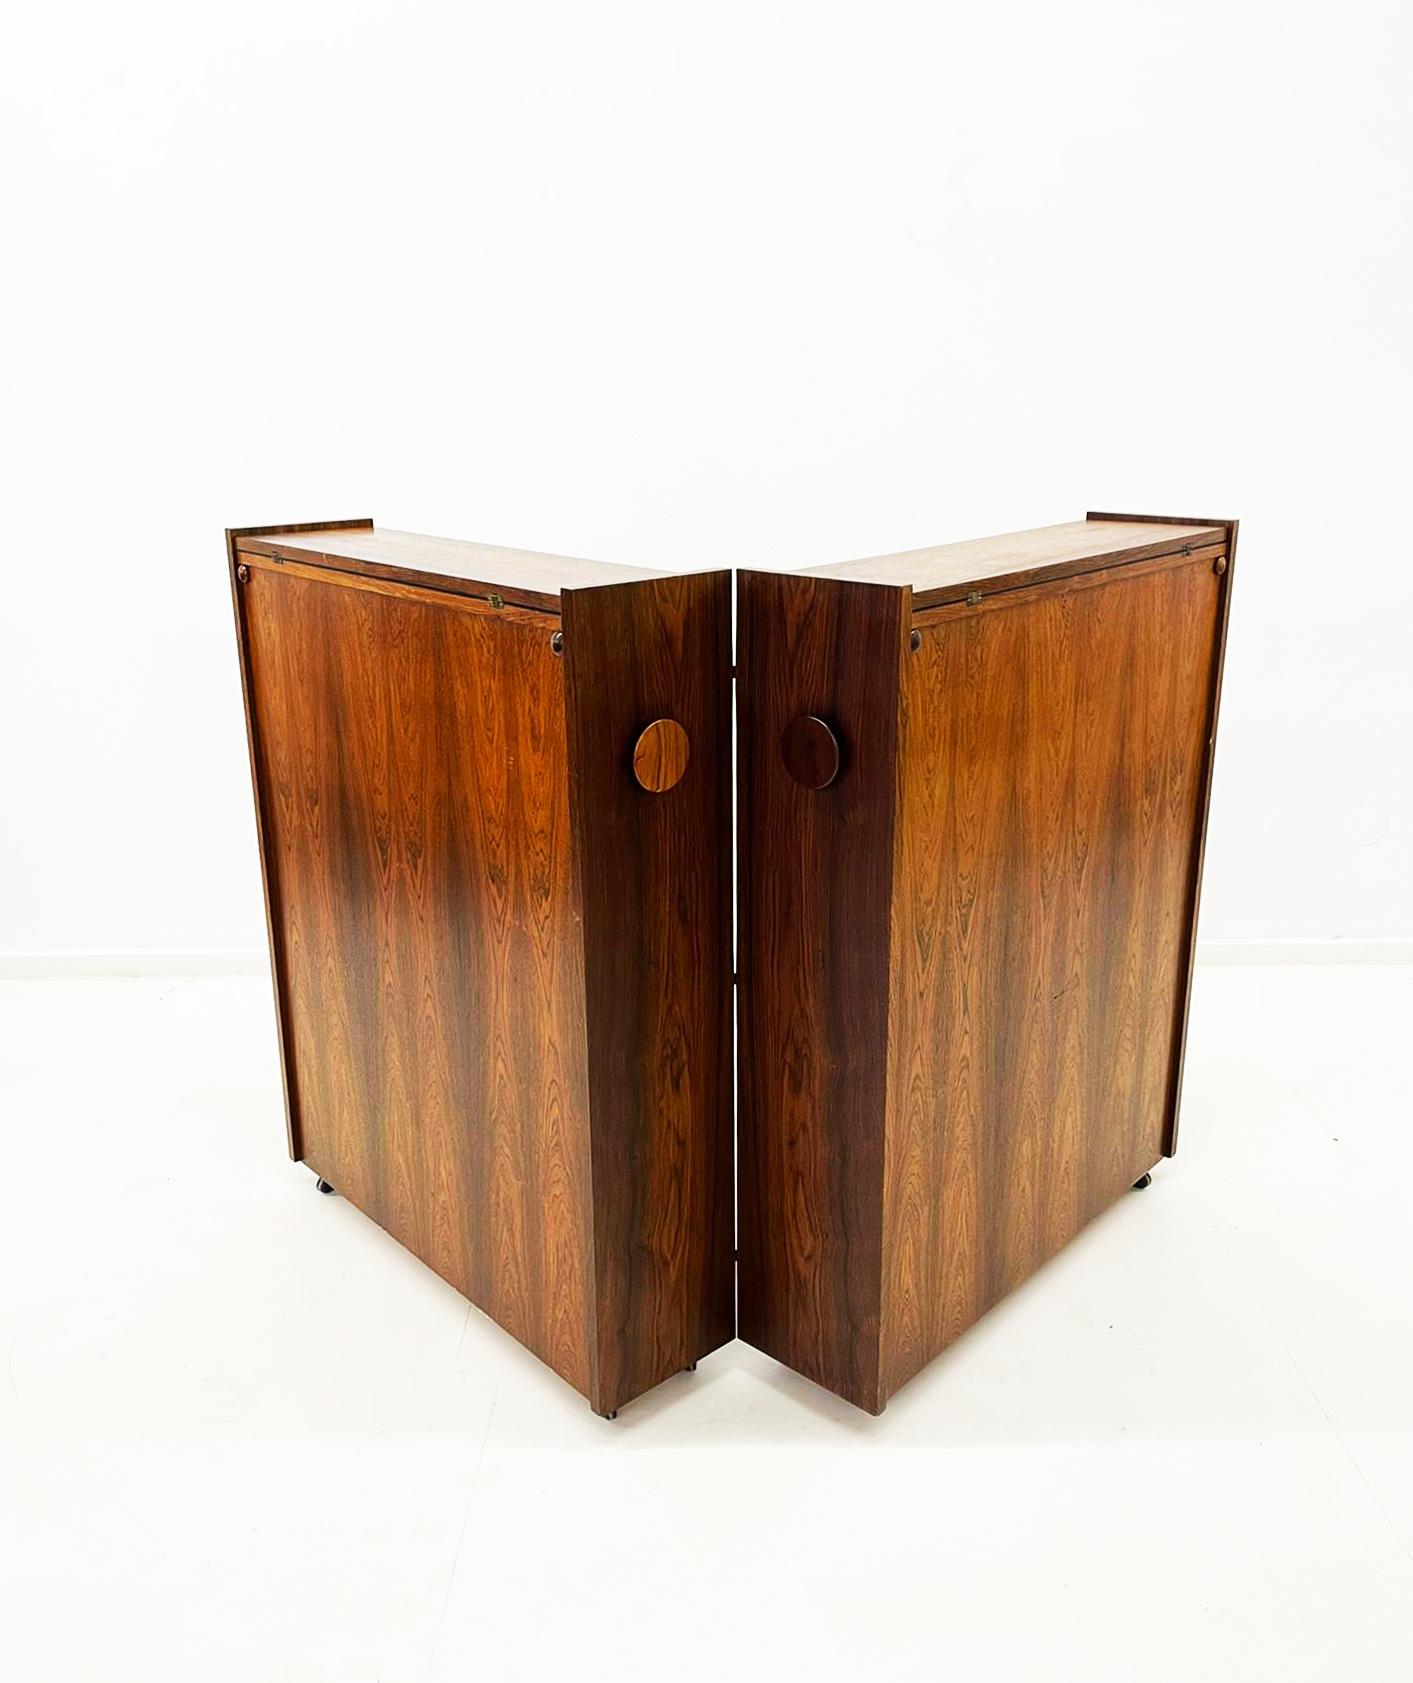 Der dänische faltbare Barschrank von Erik Buch für Dyrlund ist ein beeindruckendes Möbelstück, das funktionelles Design mit eleganter Schlichtheit verbindet. Dieser aus hochwertigem Palisanderholz gefertigte Barschrank verfügt über ein einzigartiges